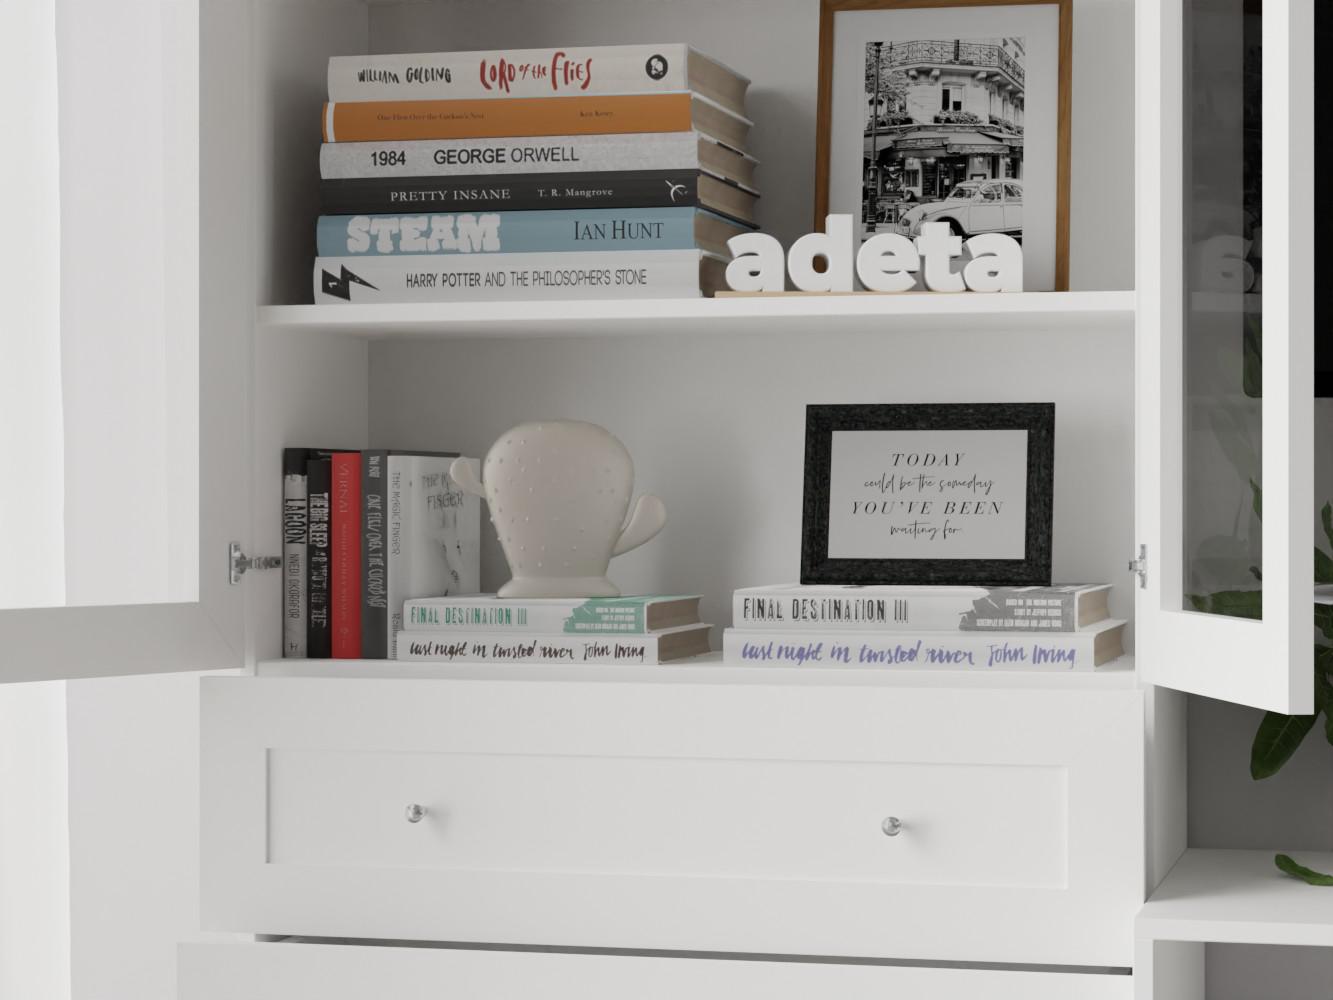 Книжный шкаф Билли 360 white ИКЕА (IKEA) с тумбой под телевизор изображение товара